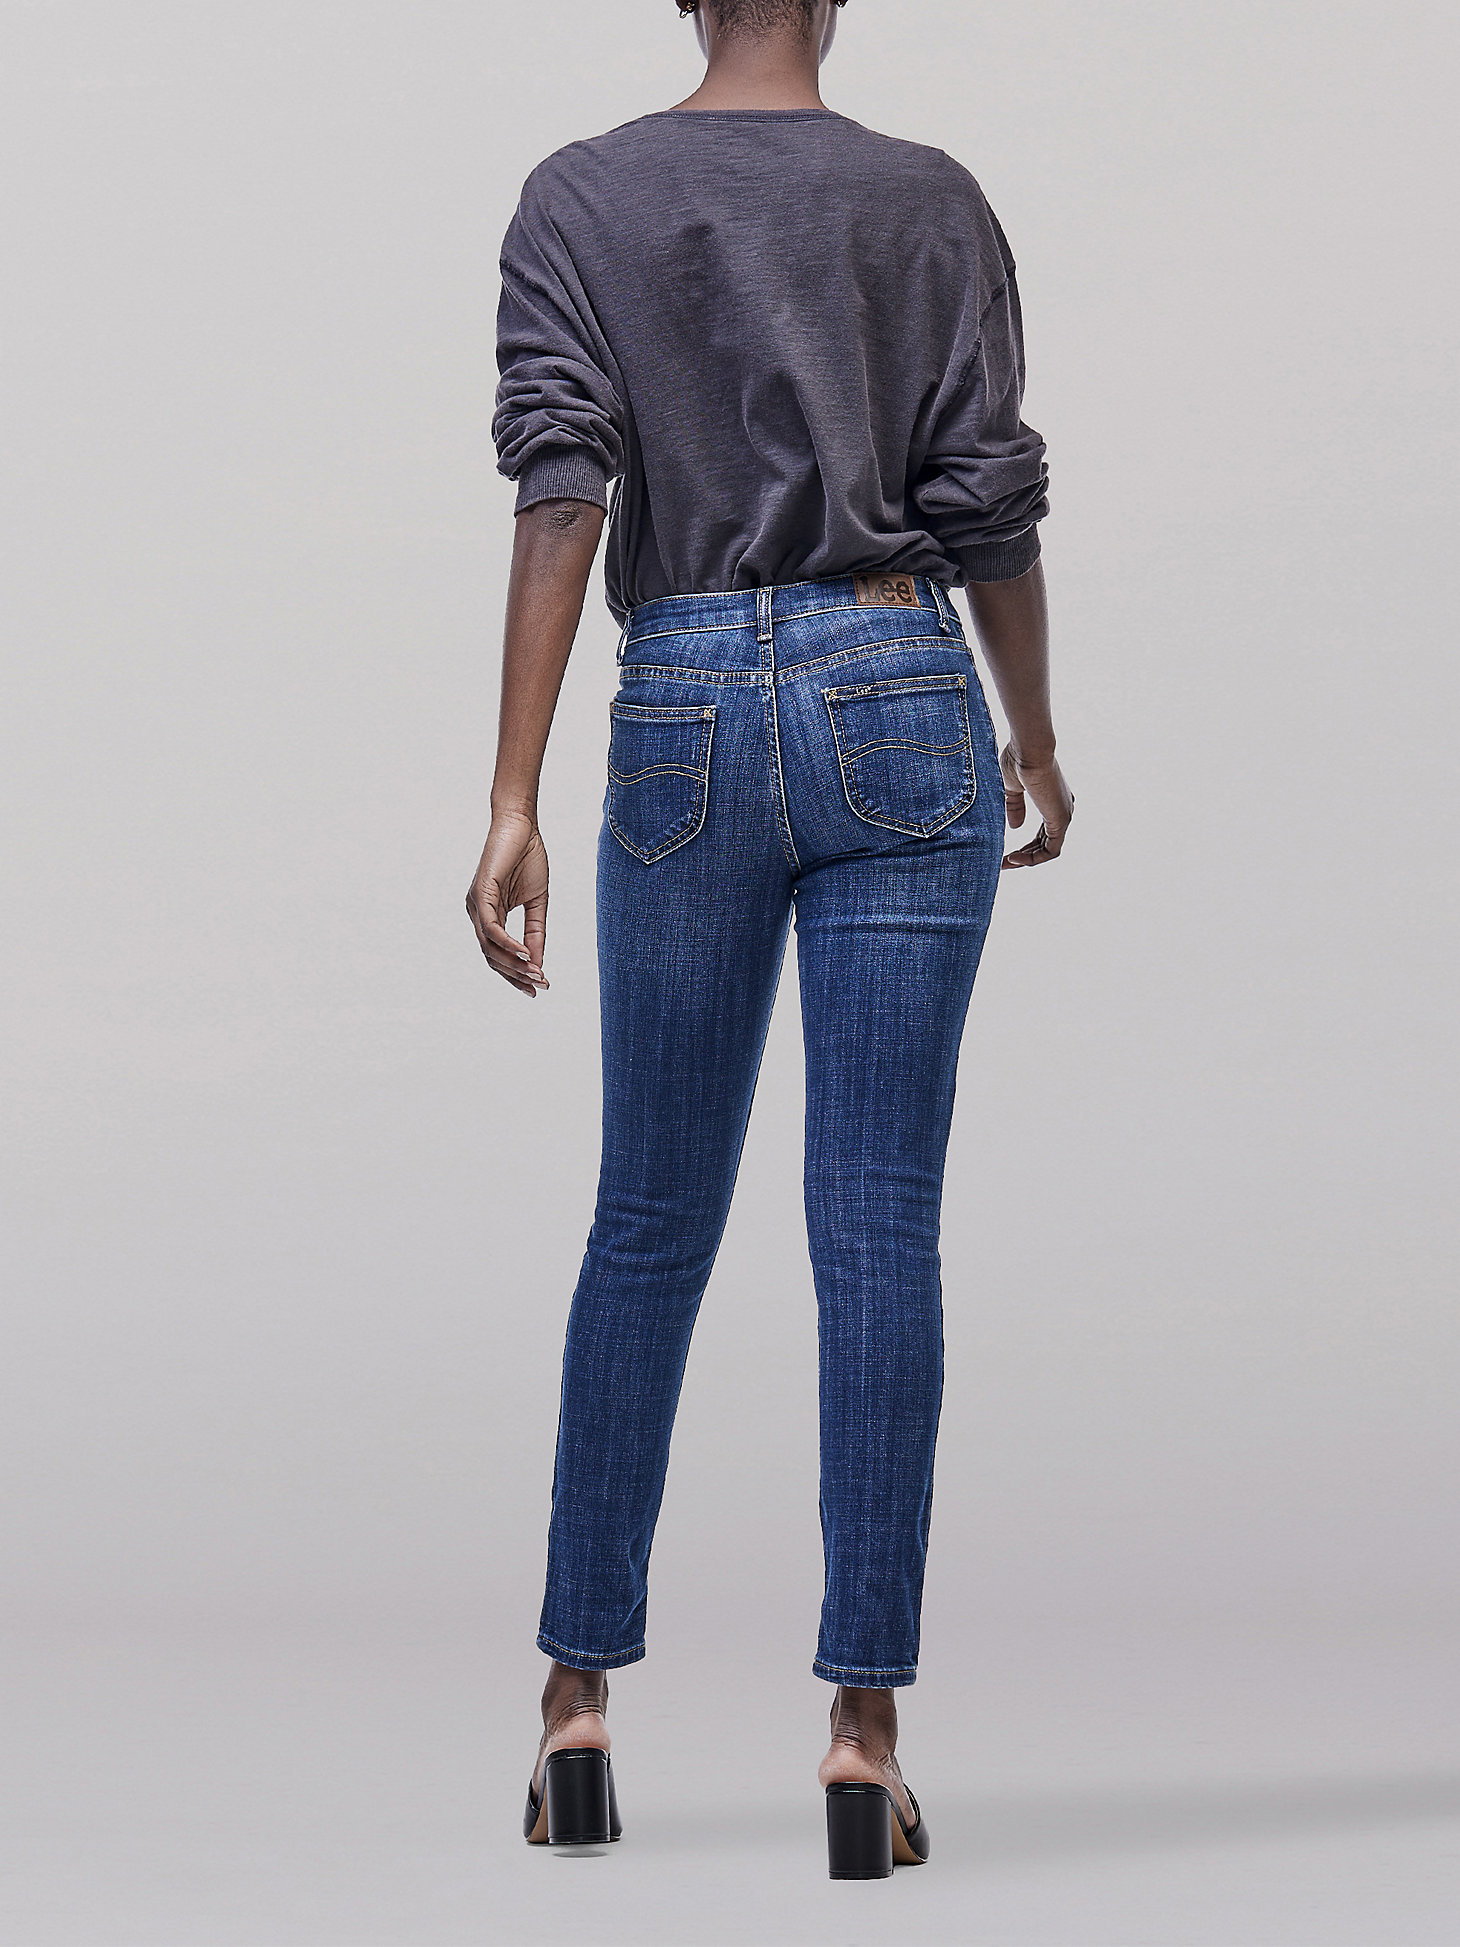 Women's Legendary Slim Fit Skinny Jean in Lagoon Blue alternative view 1